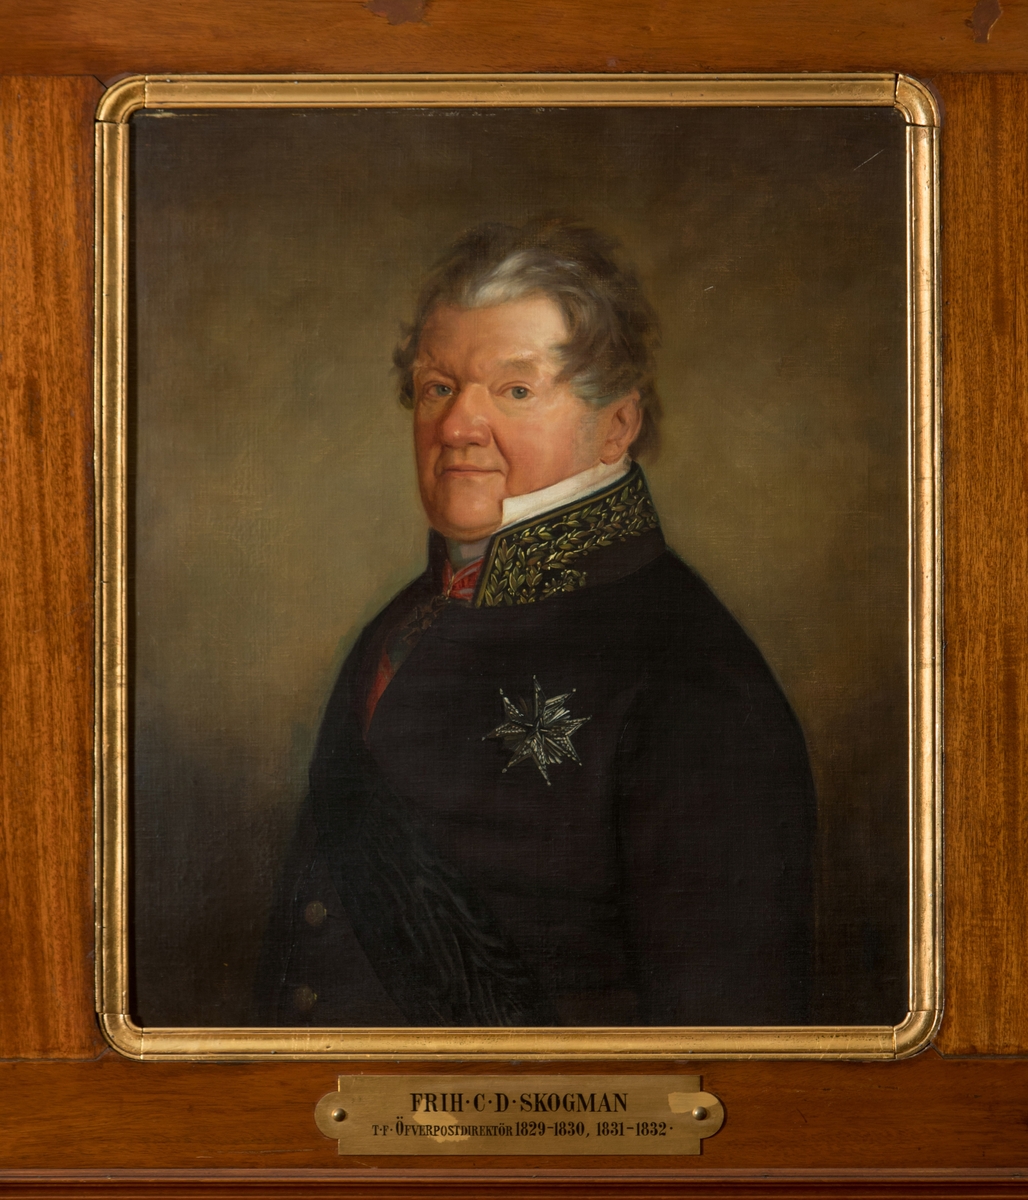 Porträtt i olja av friherre C.D. Skogman.

En mässingsskylt med text: "Frih C.D. Skogman, t.f. Öfverpostdirektör 1829-1830, 1831-1832". Duken är fäst på en plåt.